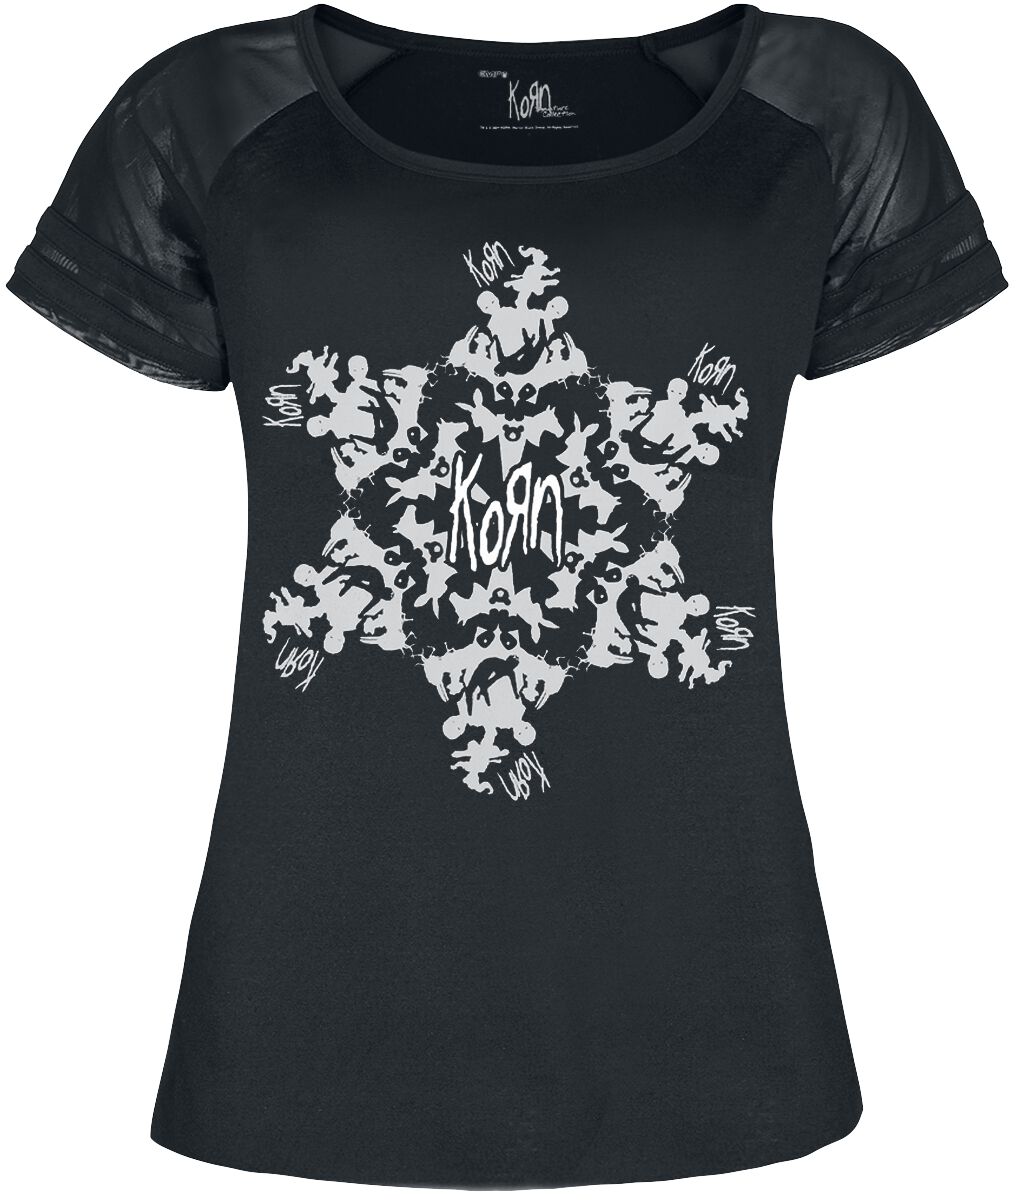 T-Shirt Manches courtes de Korn - EMP Signature Collection - S à M - pour Femme - noir